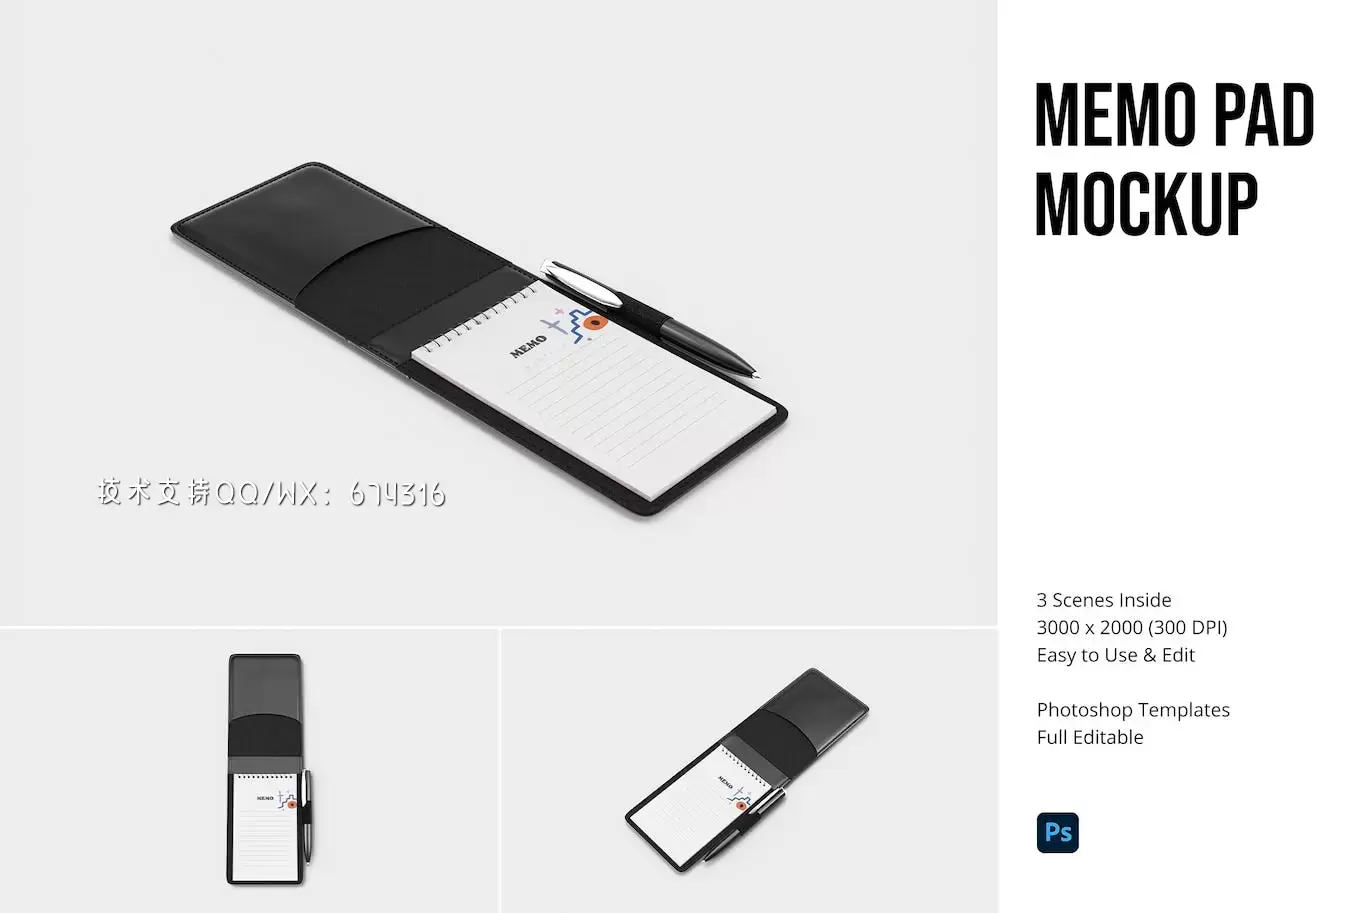 时尚高端商业商务质感笔记本VI设计样机展示模型mockups免费下载插图